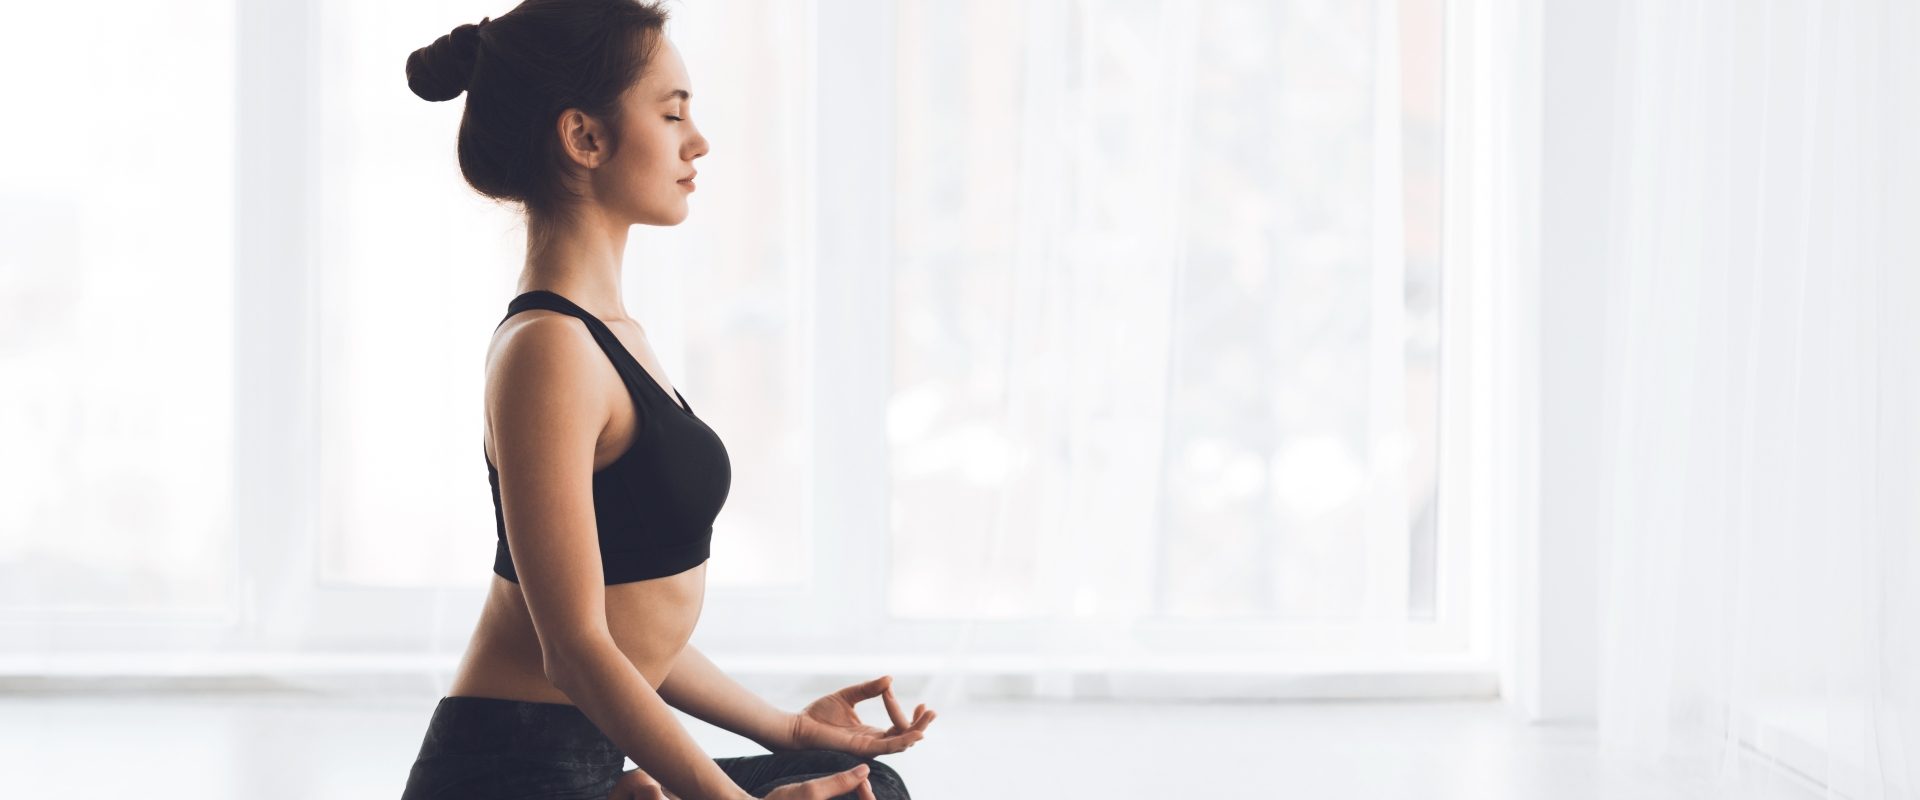 Proste ćwiczenia na rozładowanie stresu. Kobieta w czarnym stroju do jogi medytuje na macie.